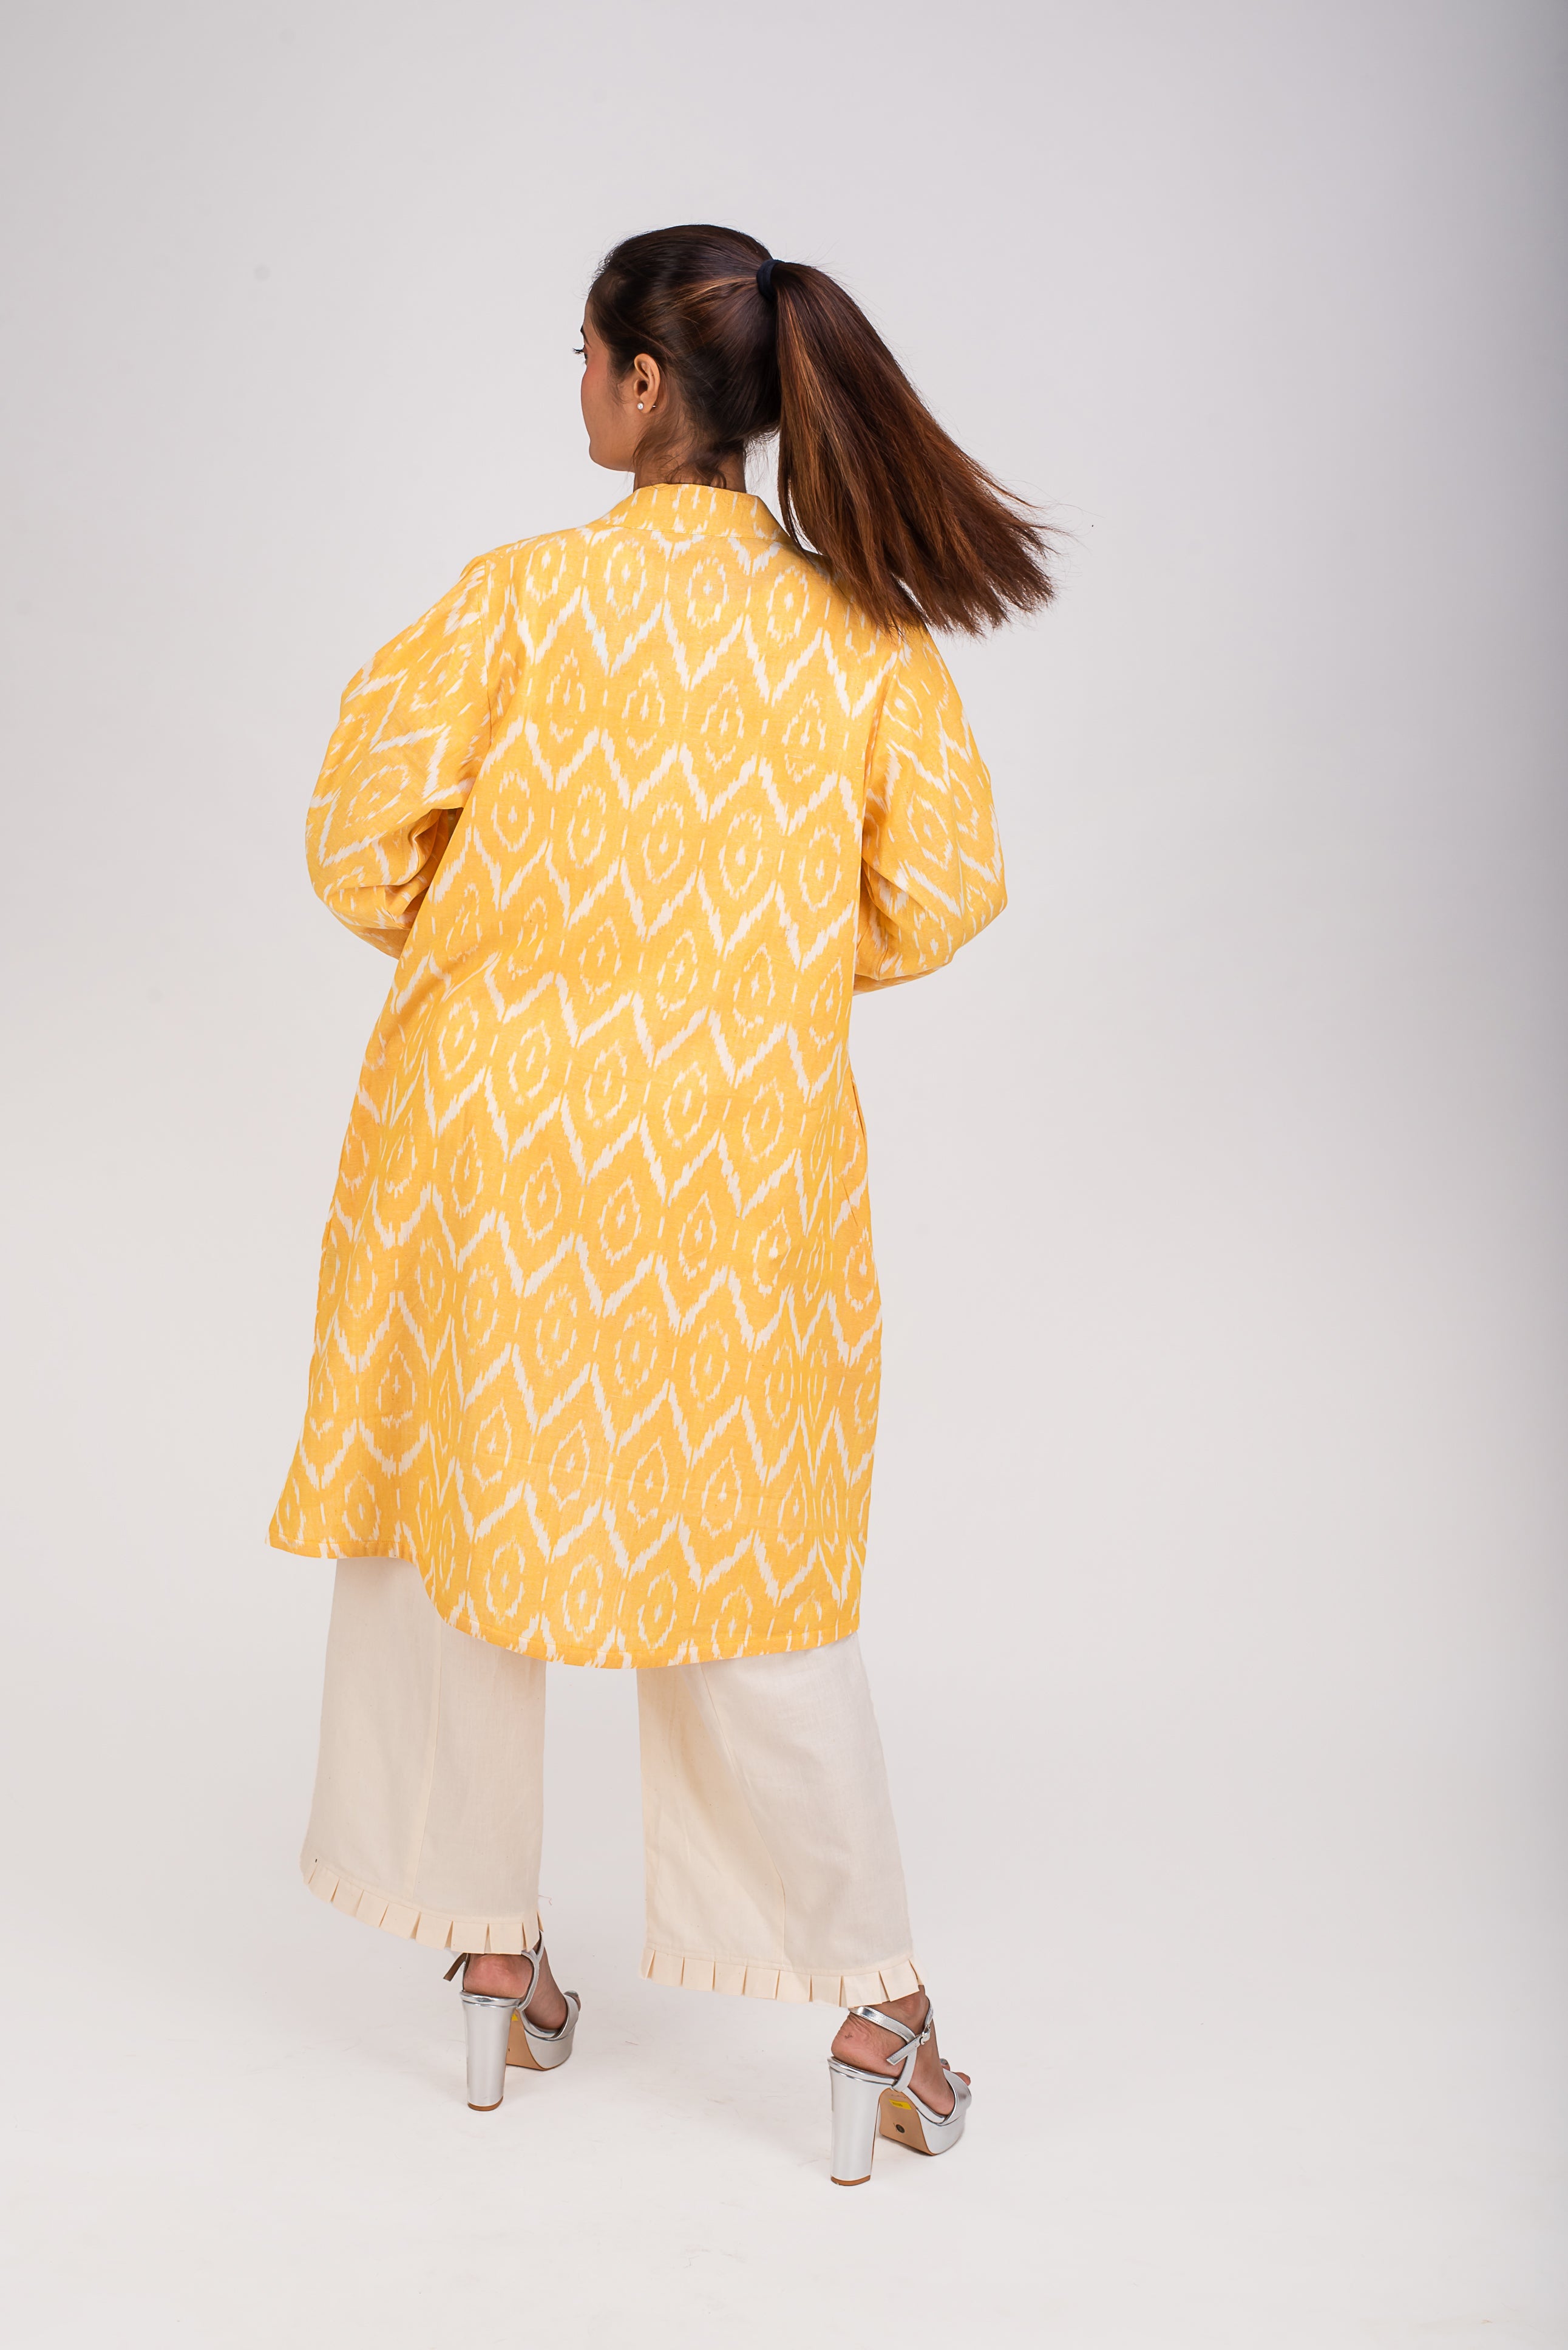 513- 315 Whitelotus "Kimono" Women's coat